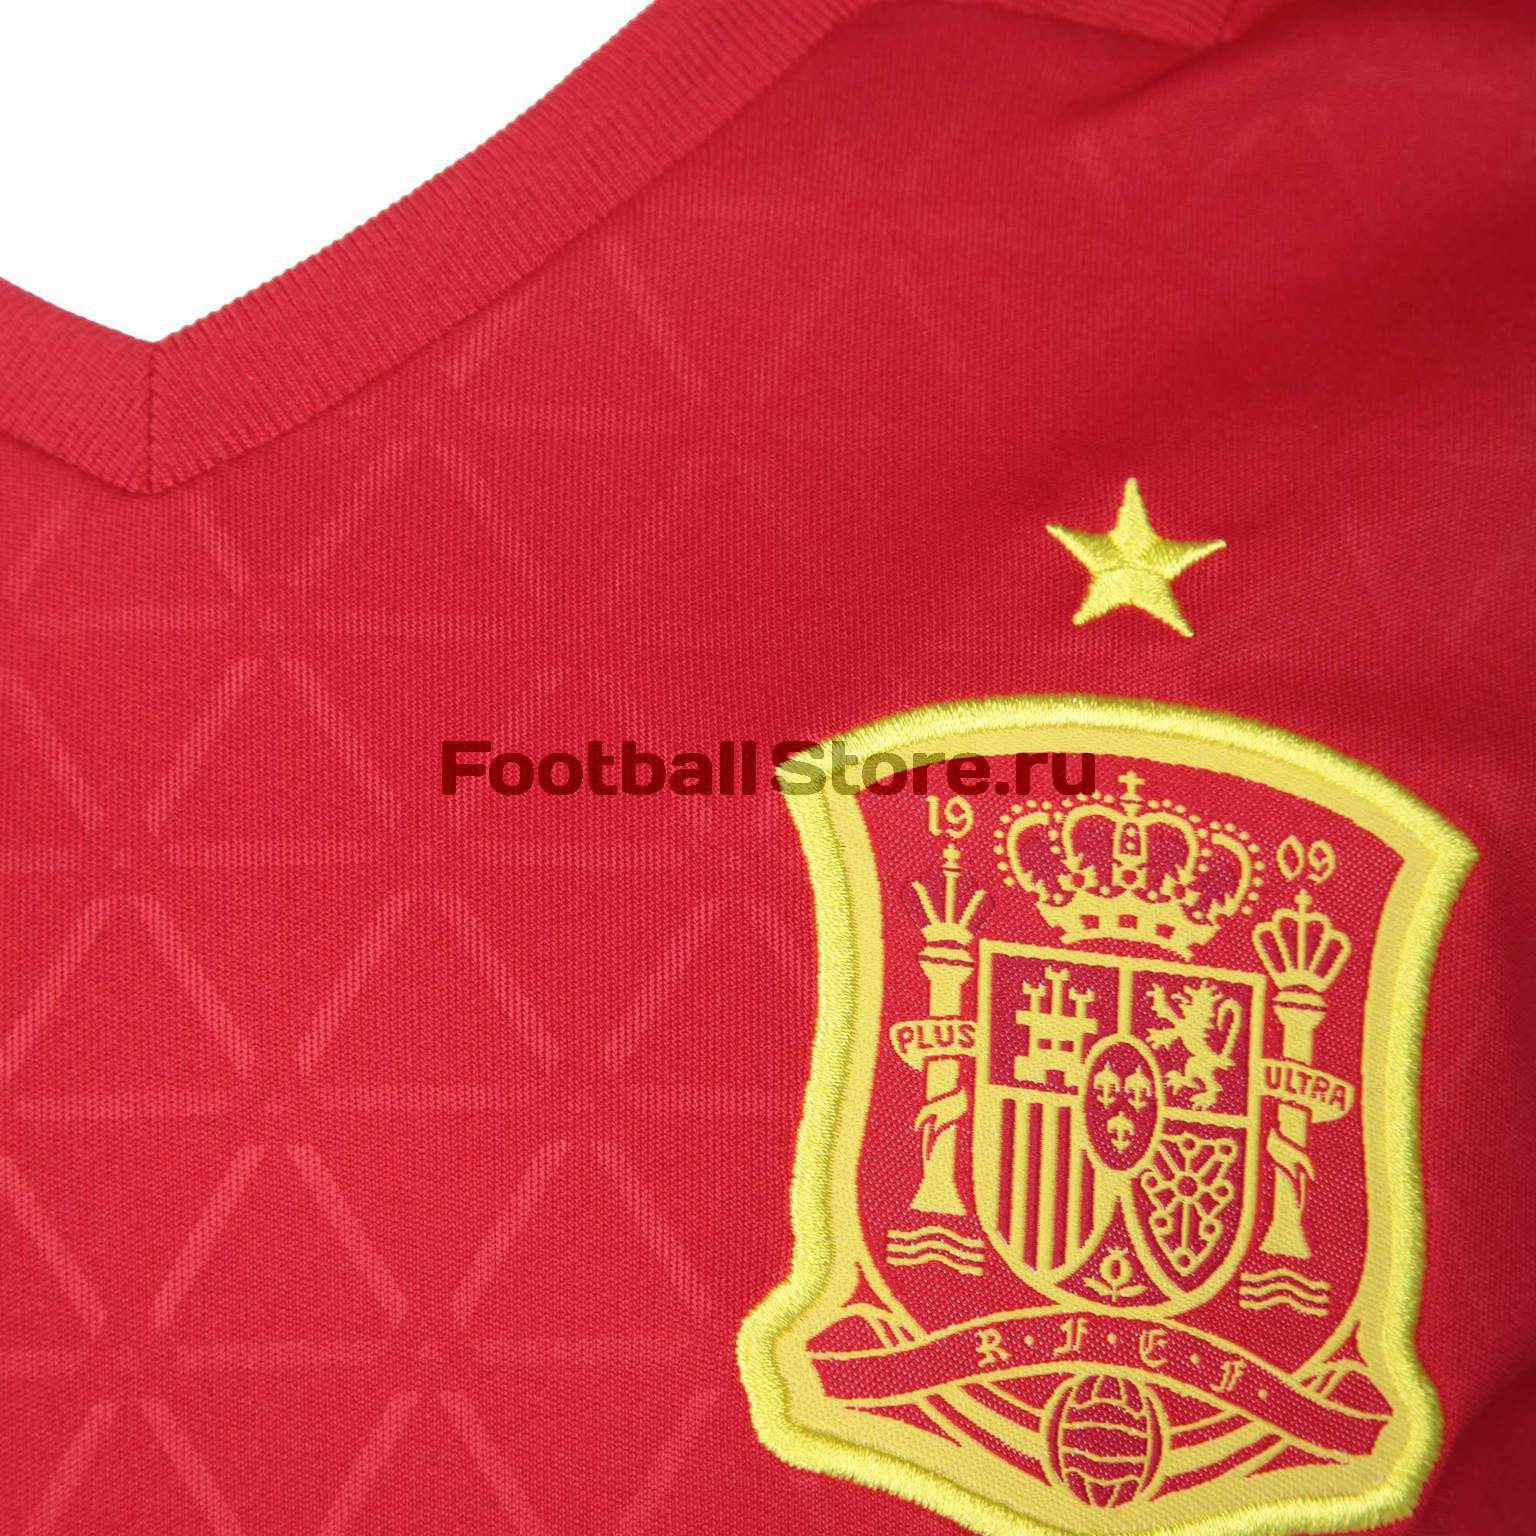 Футболка подростковая Adidas Spain Home AA0850 – купить интернет магазине footballstore, цена, фото